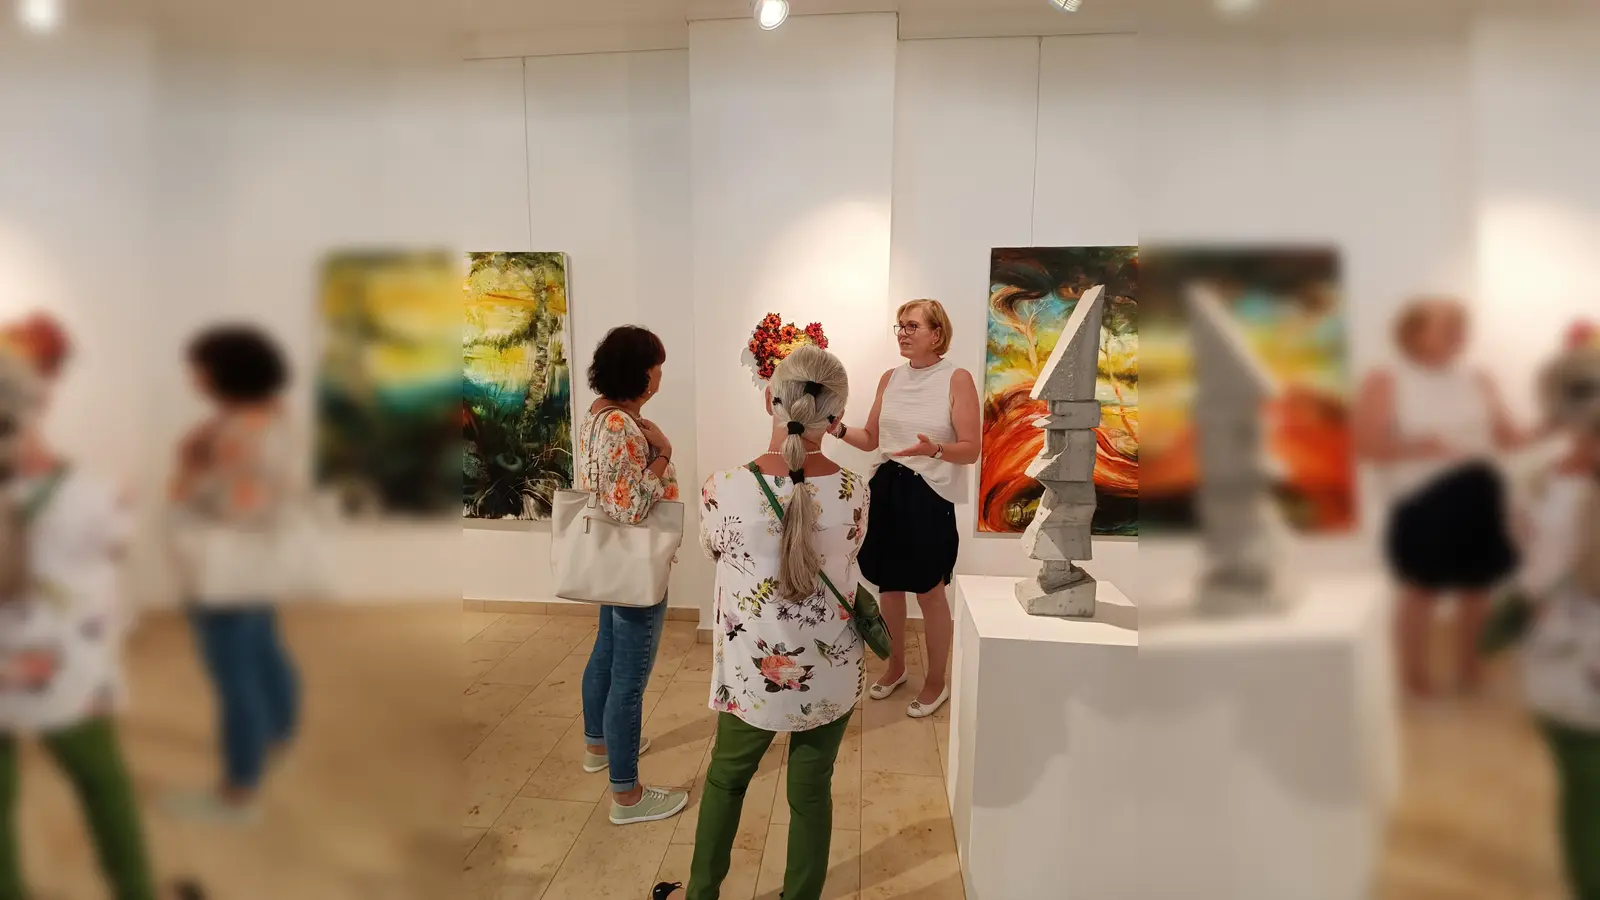 Susanne Allers (r.) führt Besucher durch die Ausstellung. (Foto: Susanne Allers)